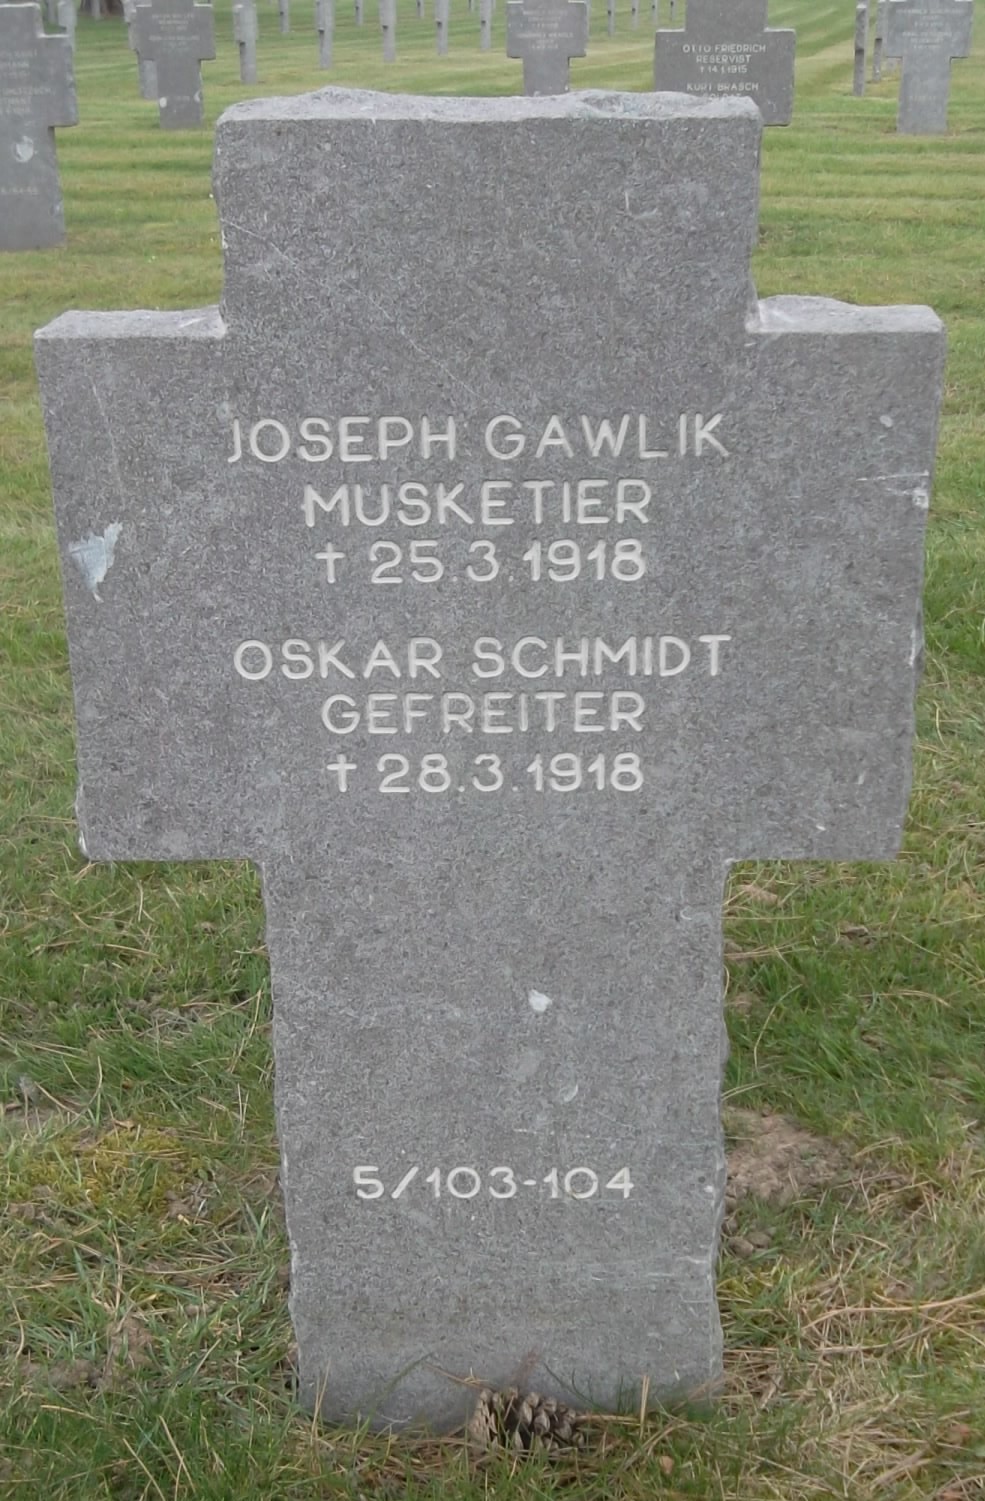 TOMBE de Josef GAWLIK à Chauny - Copie.JPG